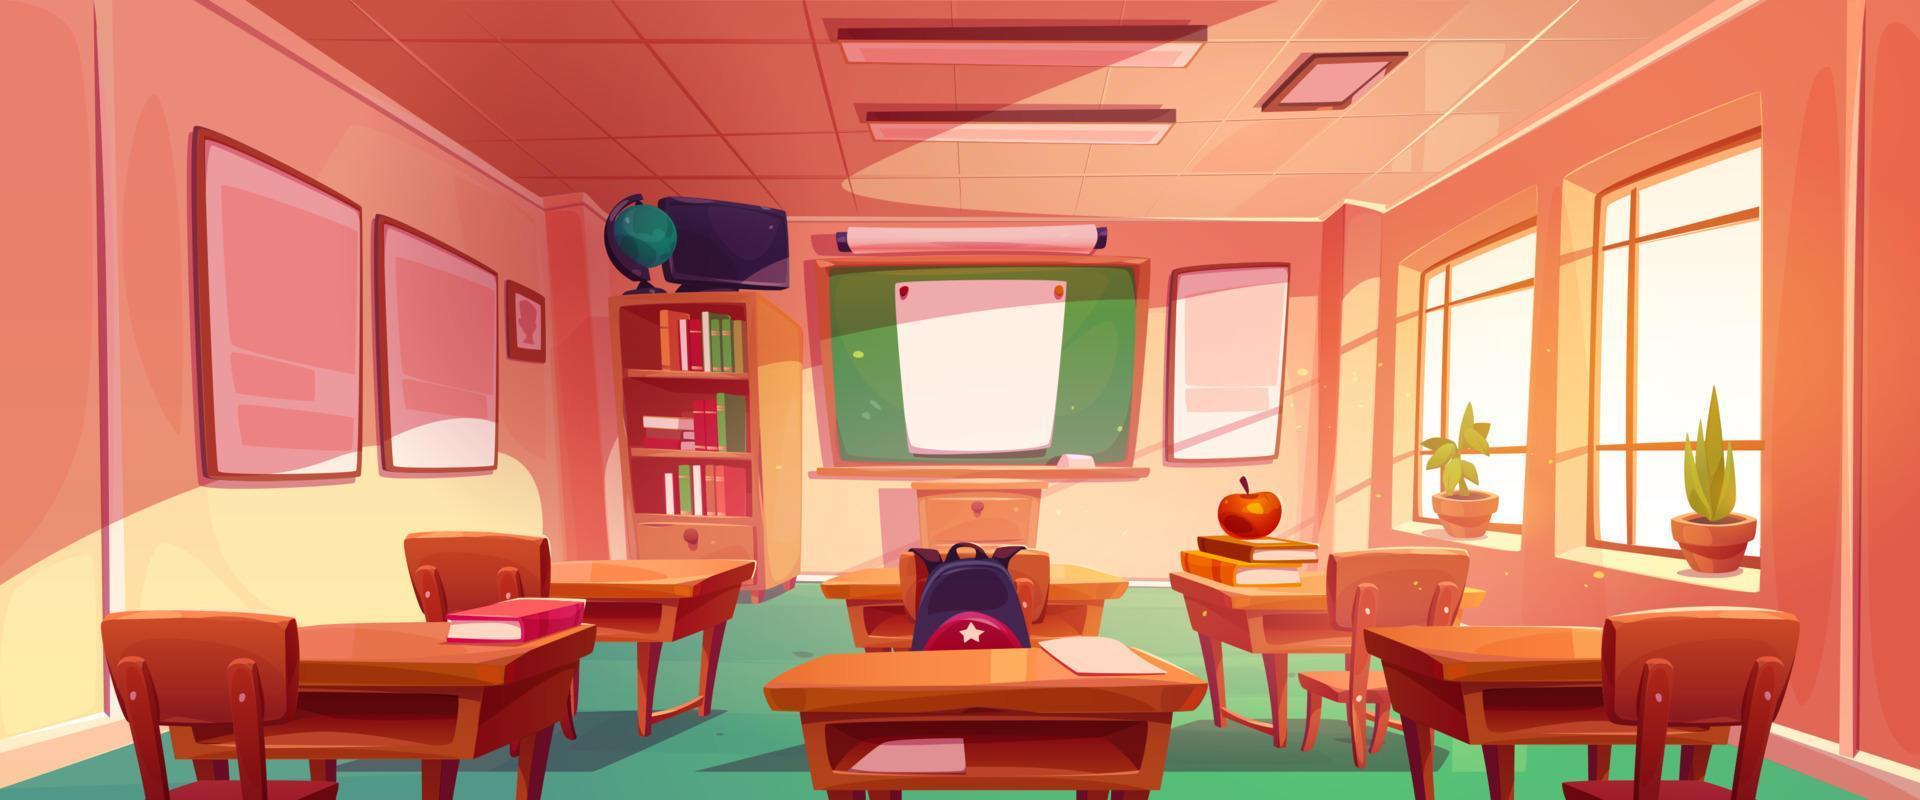 salle de classe avec tableau vert vecteur